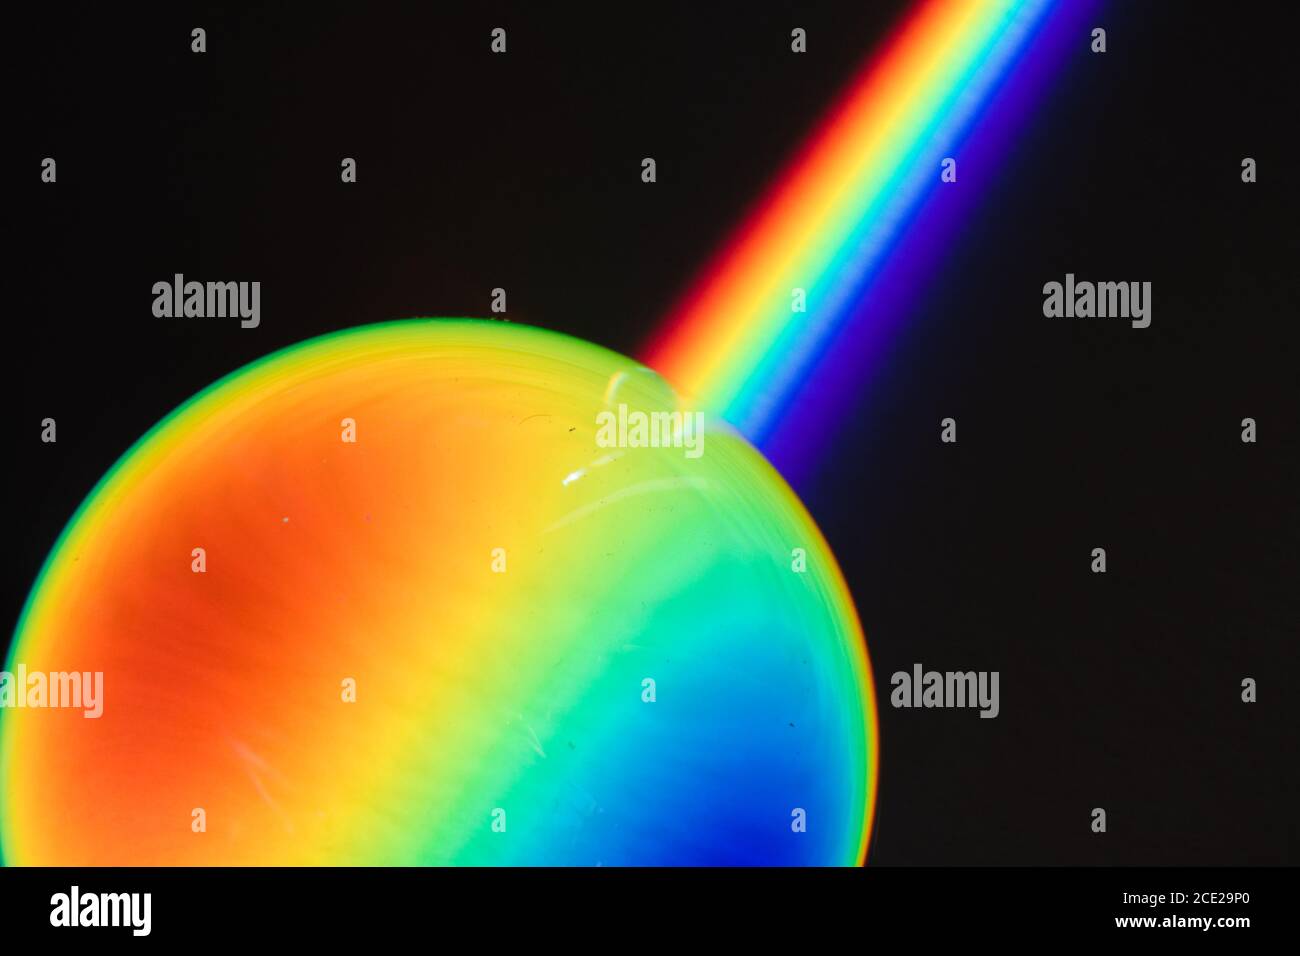 Farben des Regenbogenprodukts des gebrochenen Lichts, das das Spektrum des Lichts zeigt, das von einem sphärischen Glasobjekt Physik und Optik gebogen wird Stockfoto